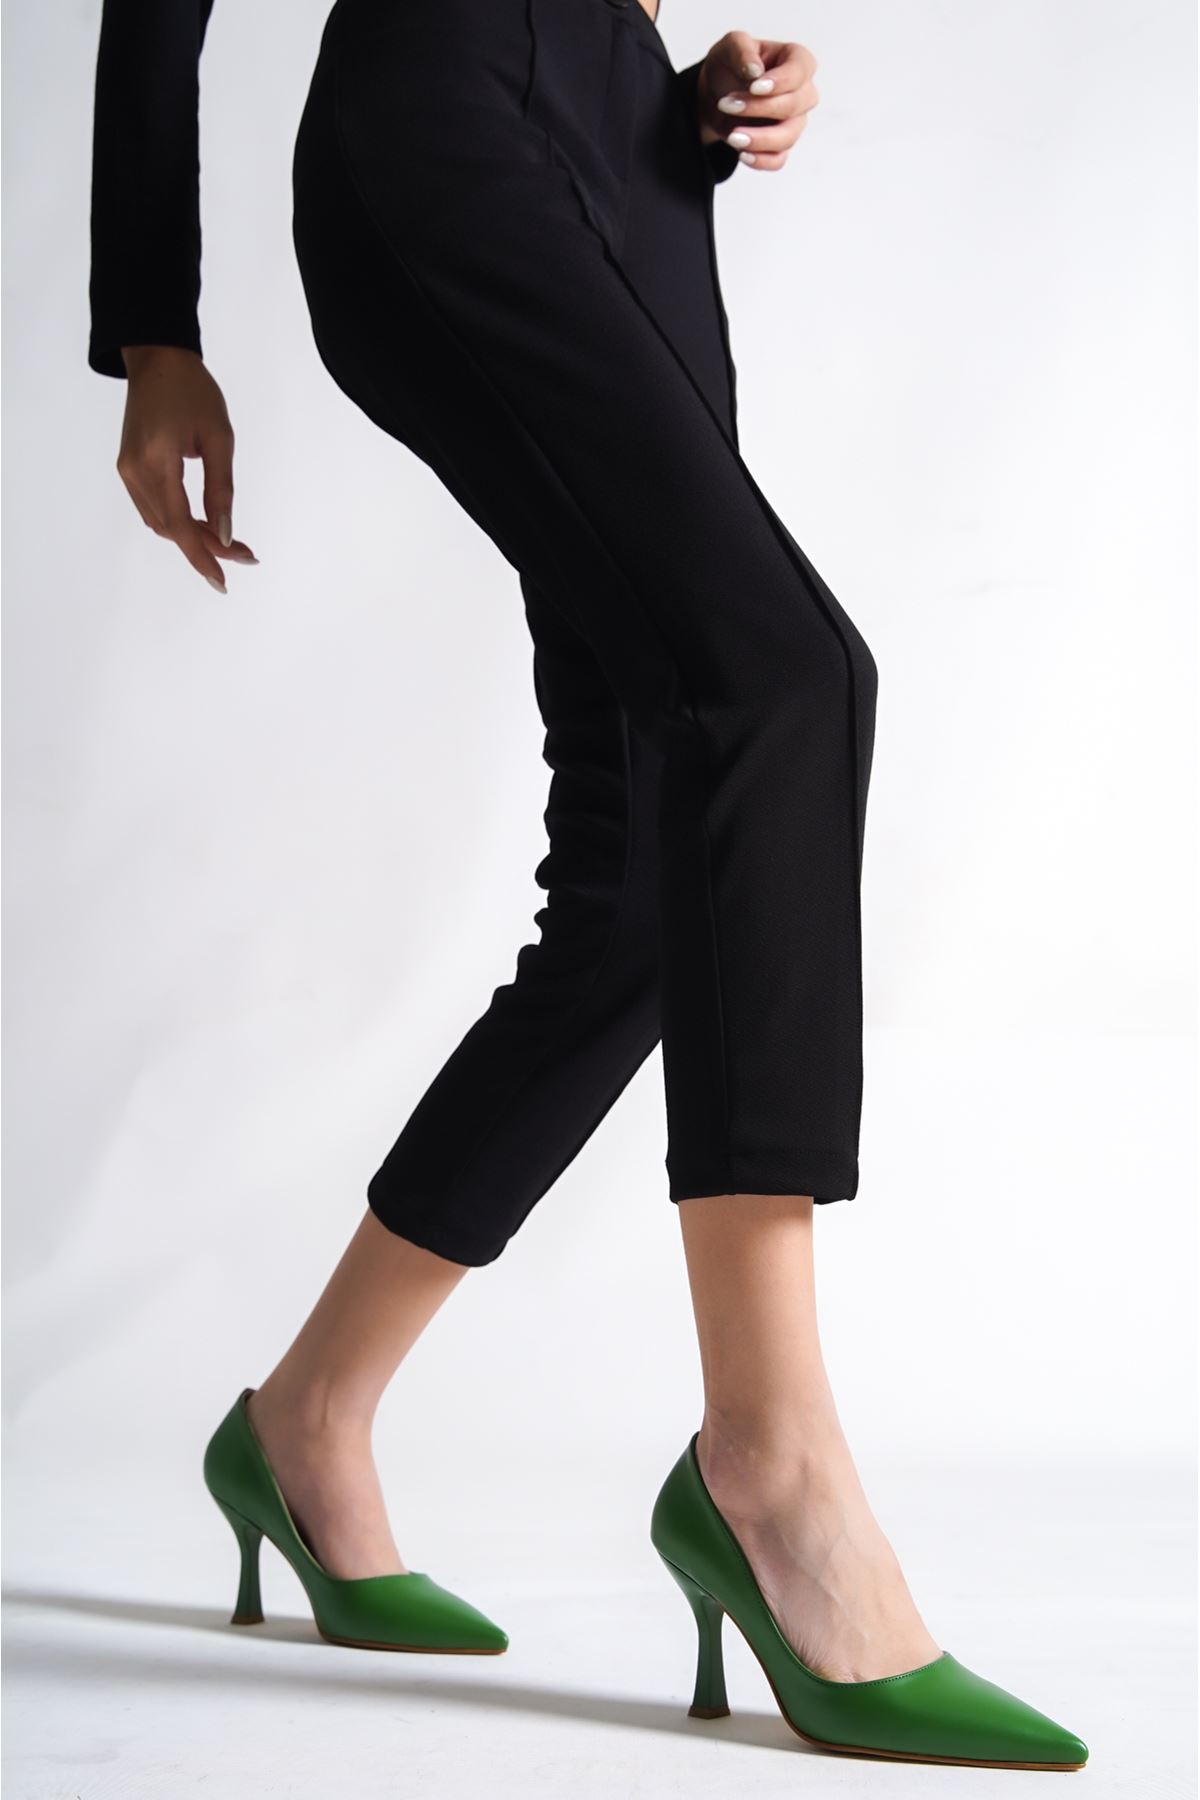 Beliz Kadın Stiletto Topuklu Ayakkabı Çimen Yeşili Cilt